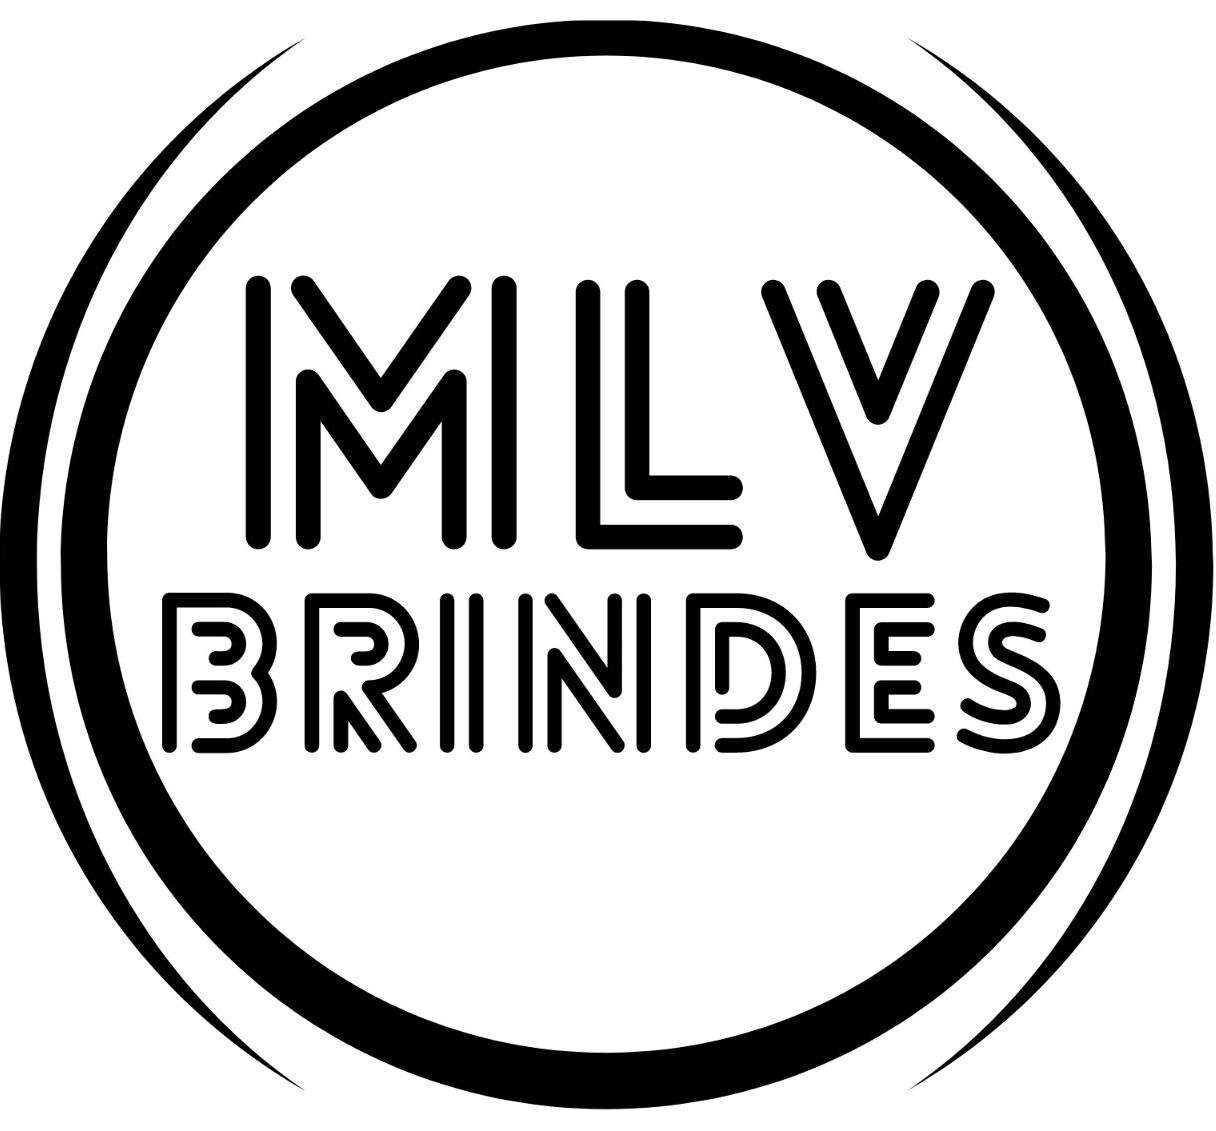 MVL BRINDES